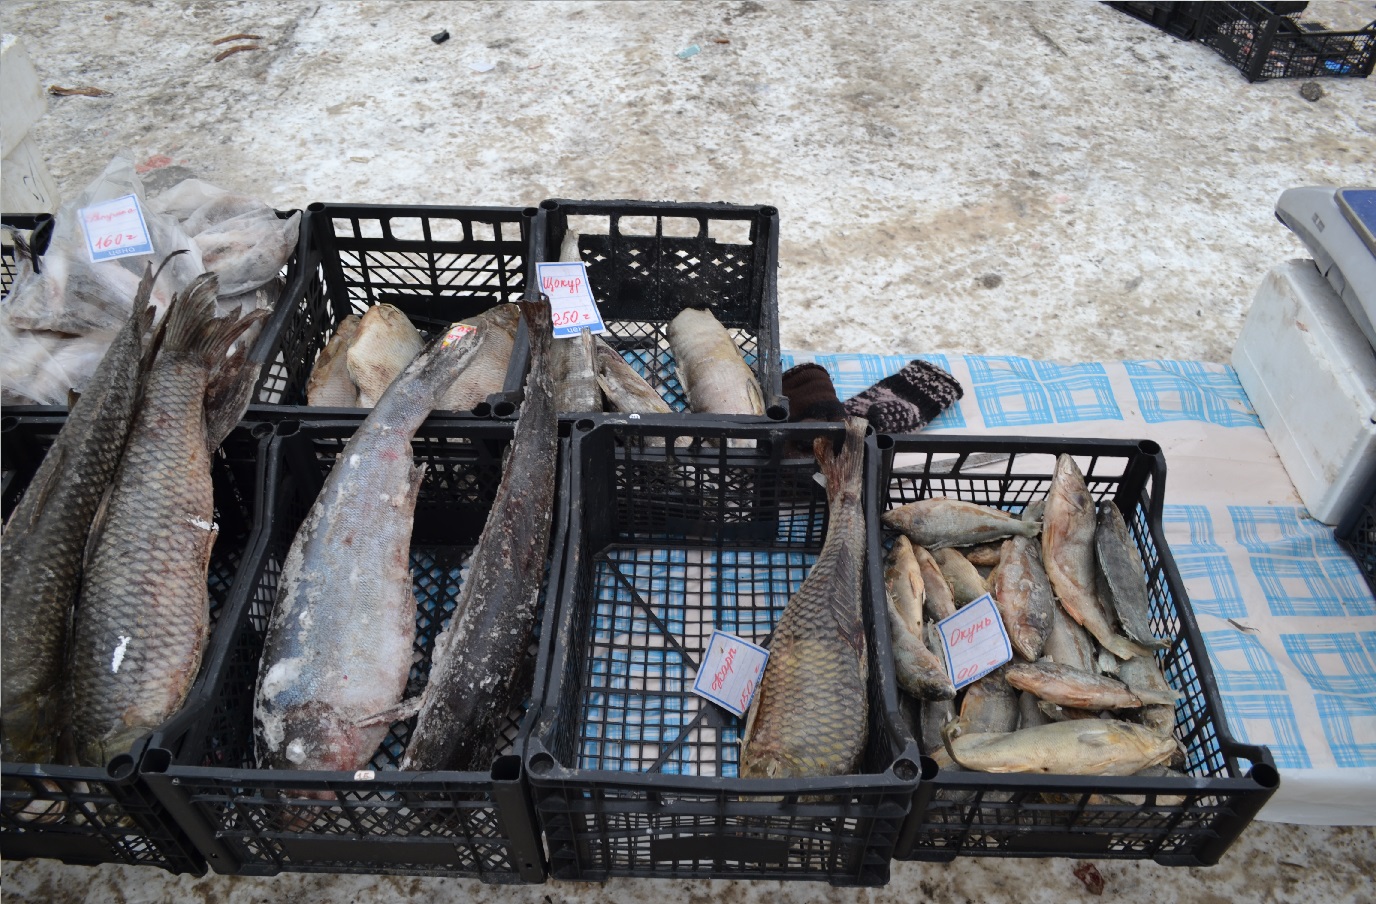 цены на рыбу в Тюмени, ТЦ Порт, ярмарка